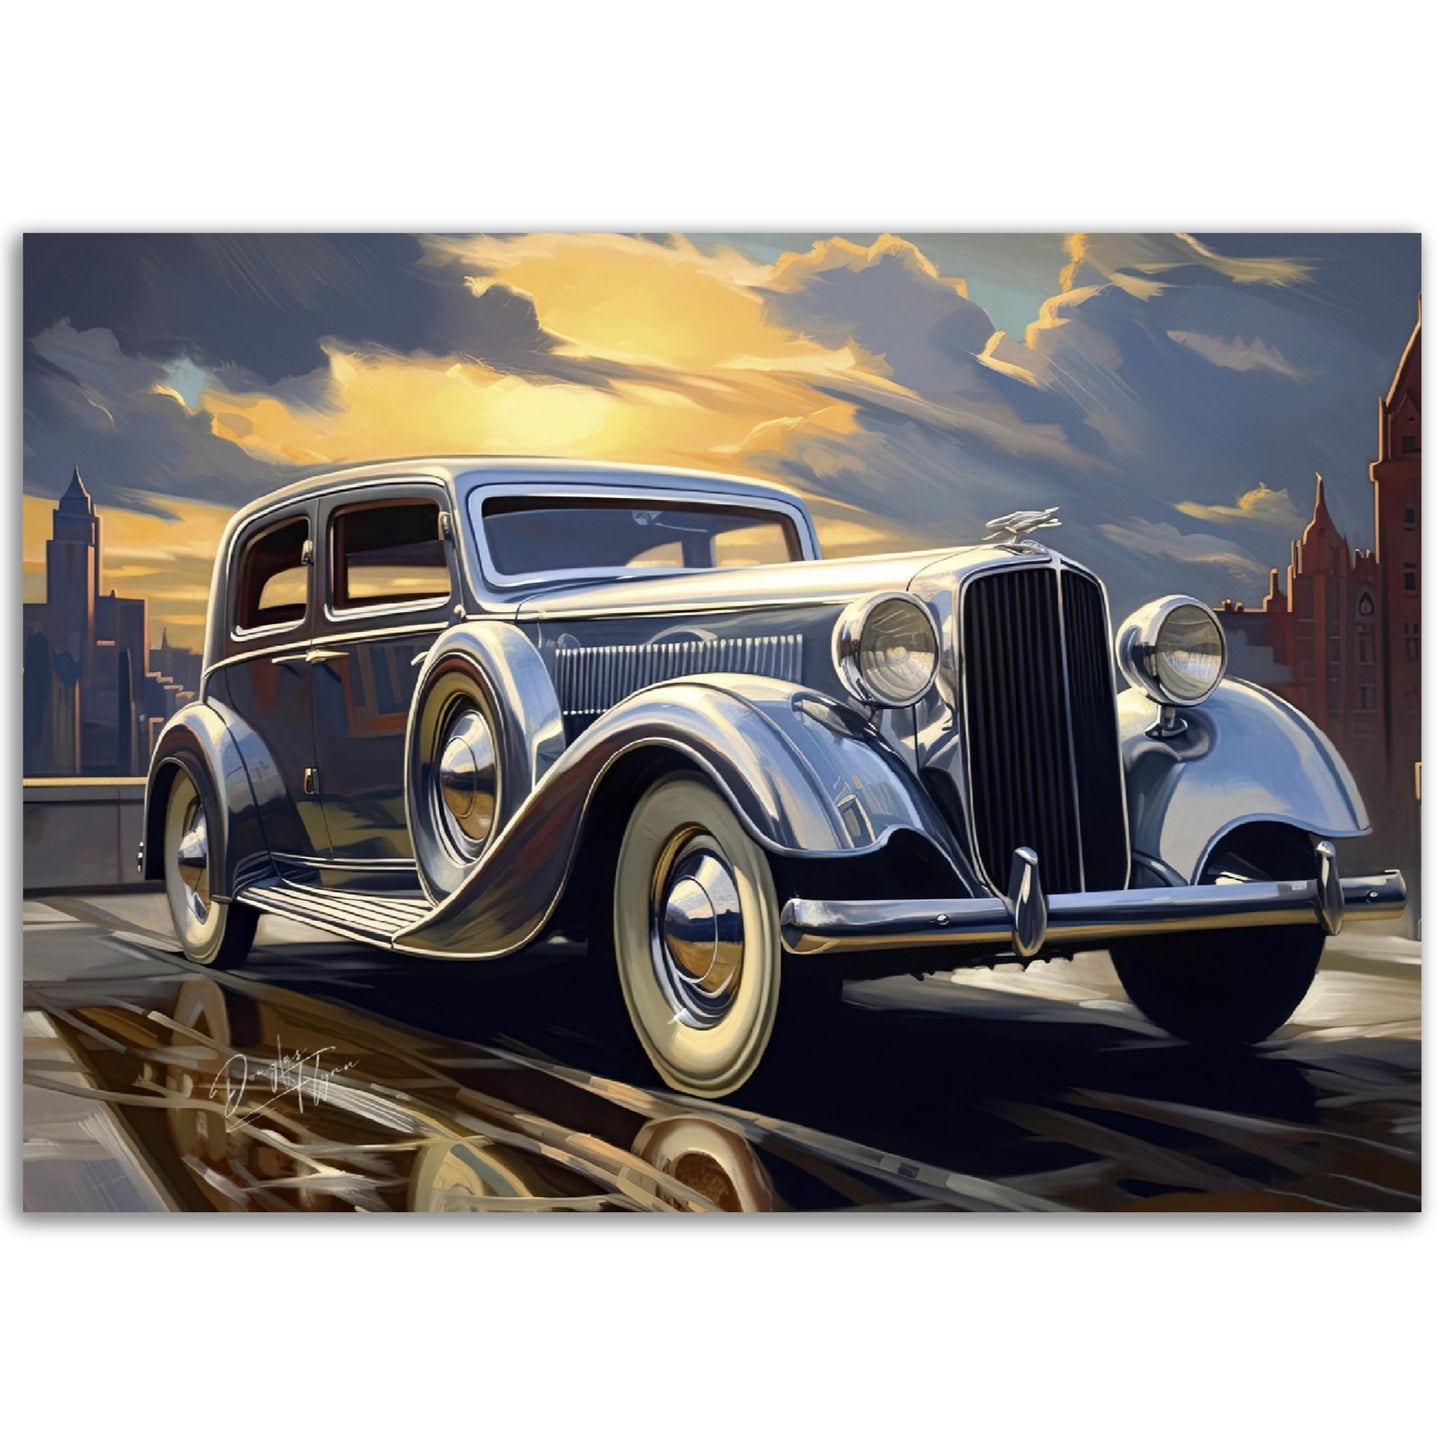 »Silver 1930s Pierce-Arrow Silver Arriw vintage car«